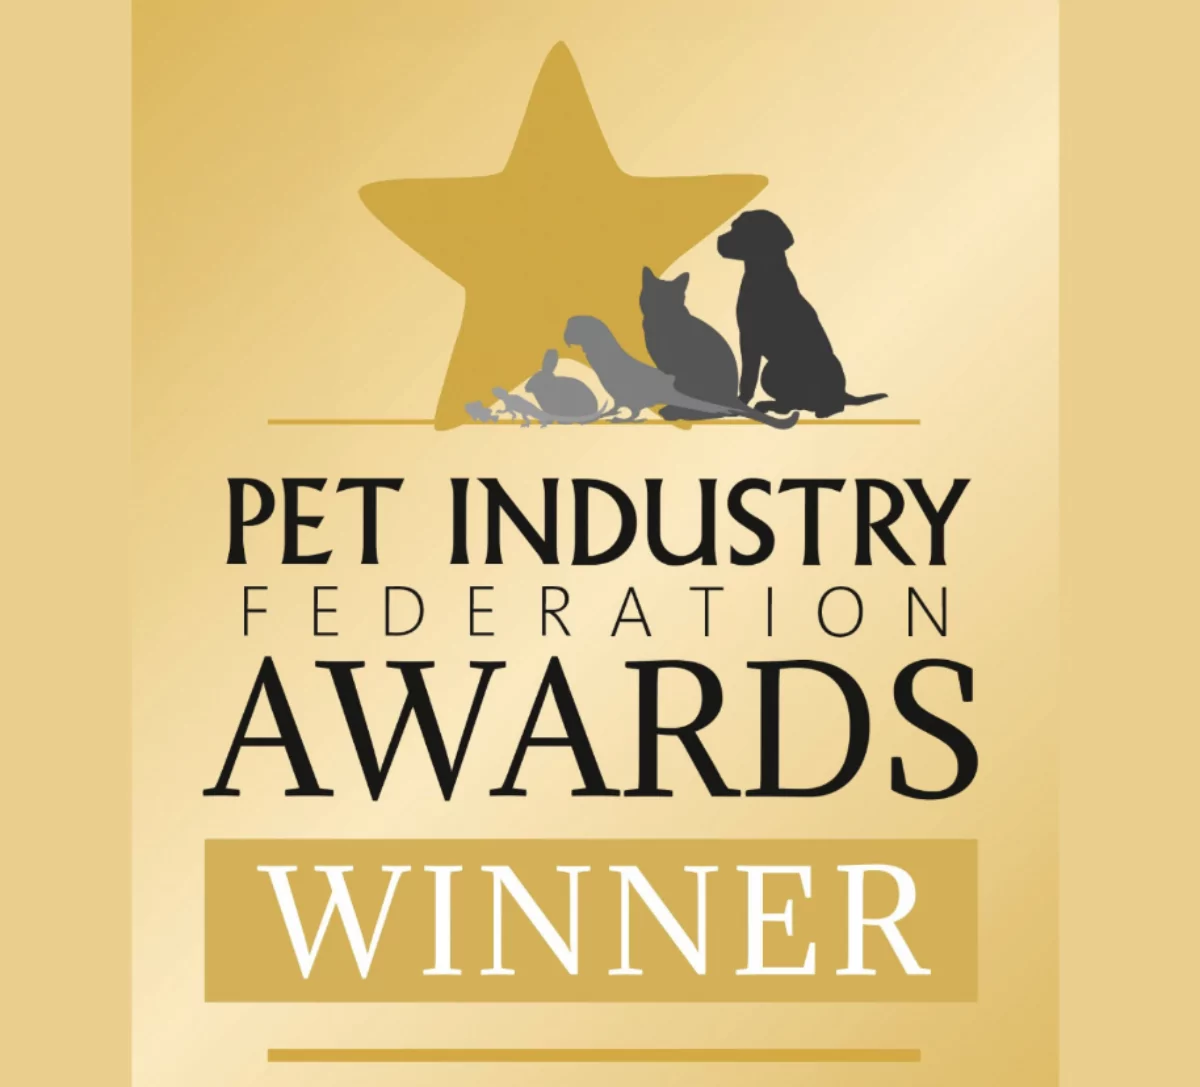 Pet industry federation awards winner logo